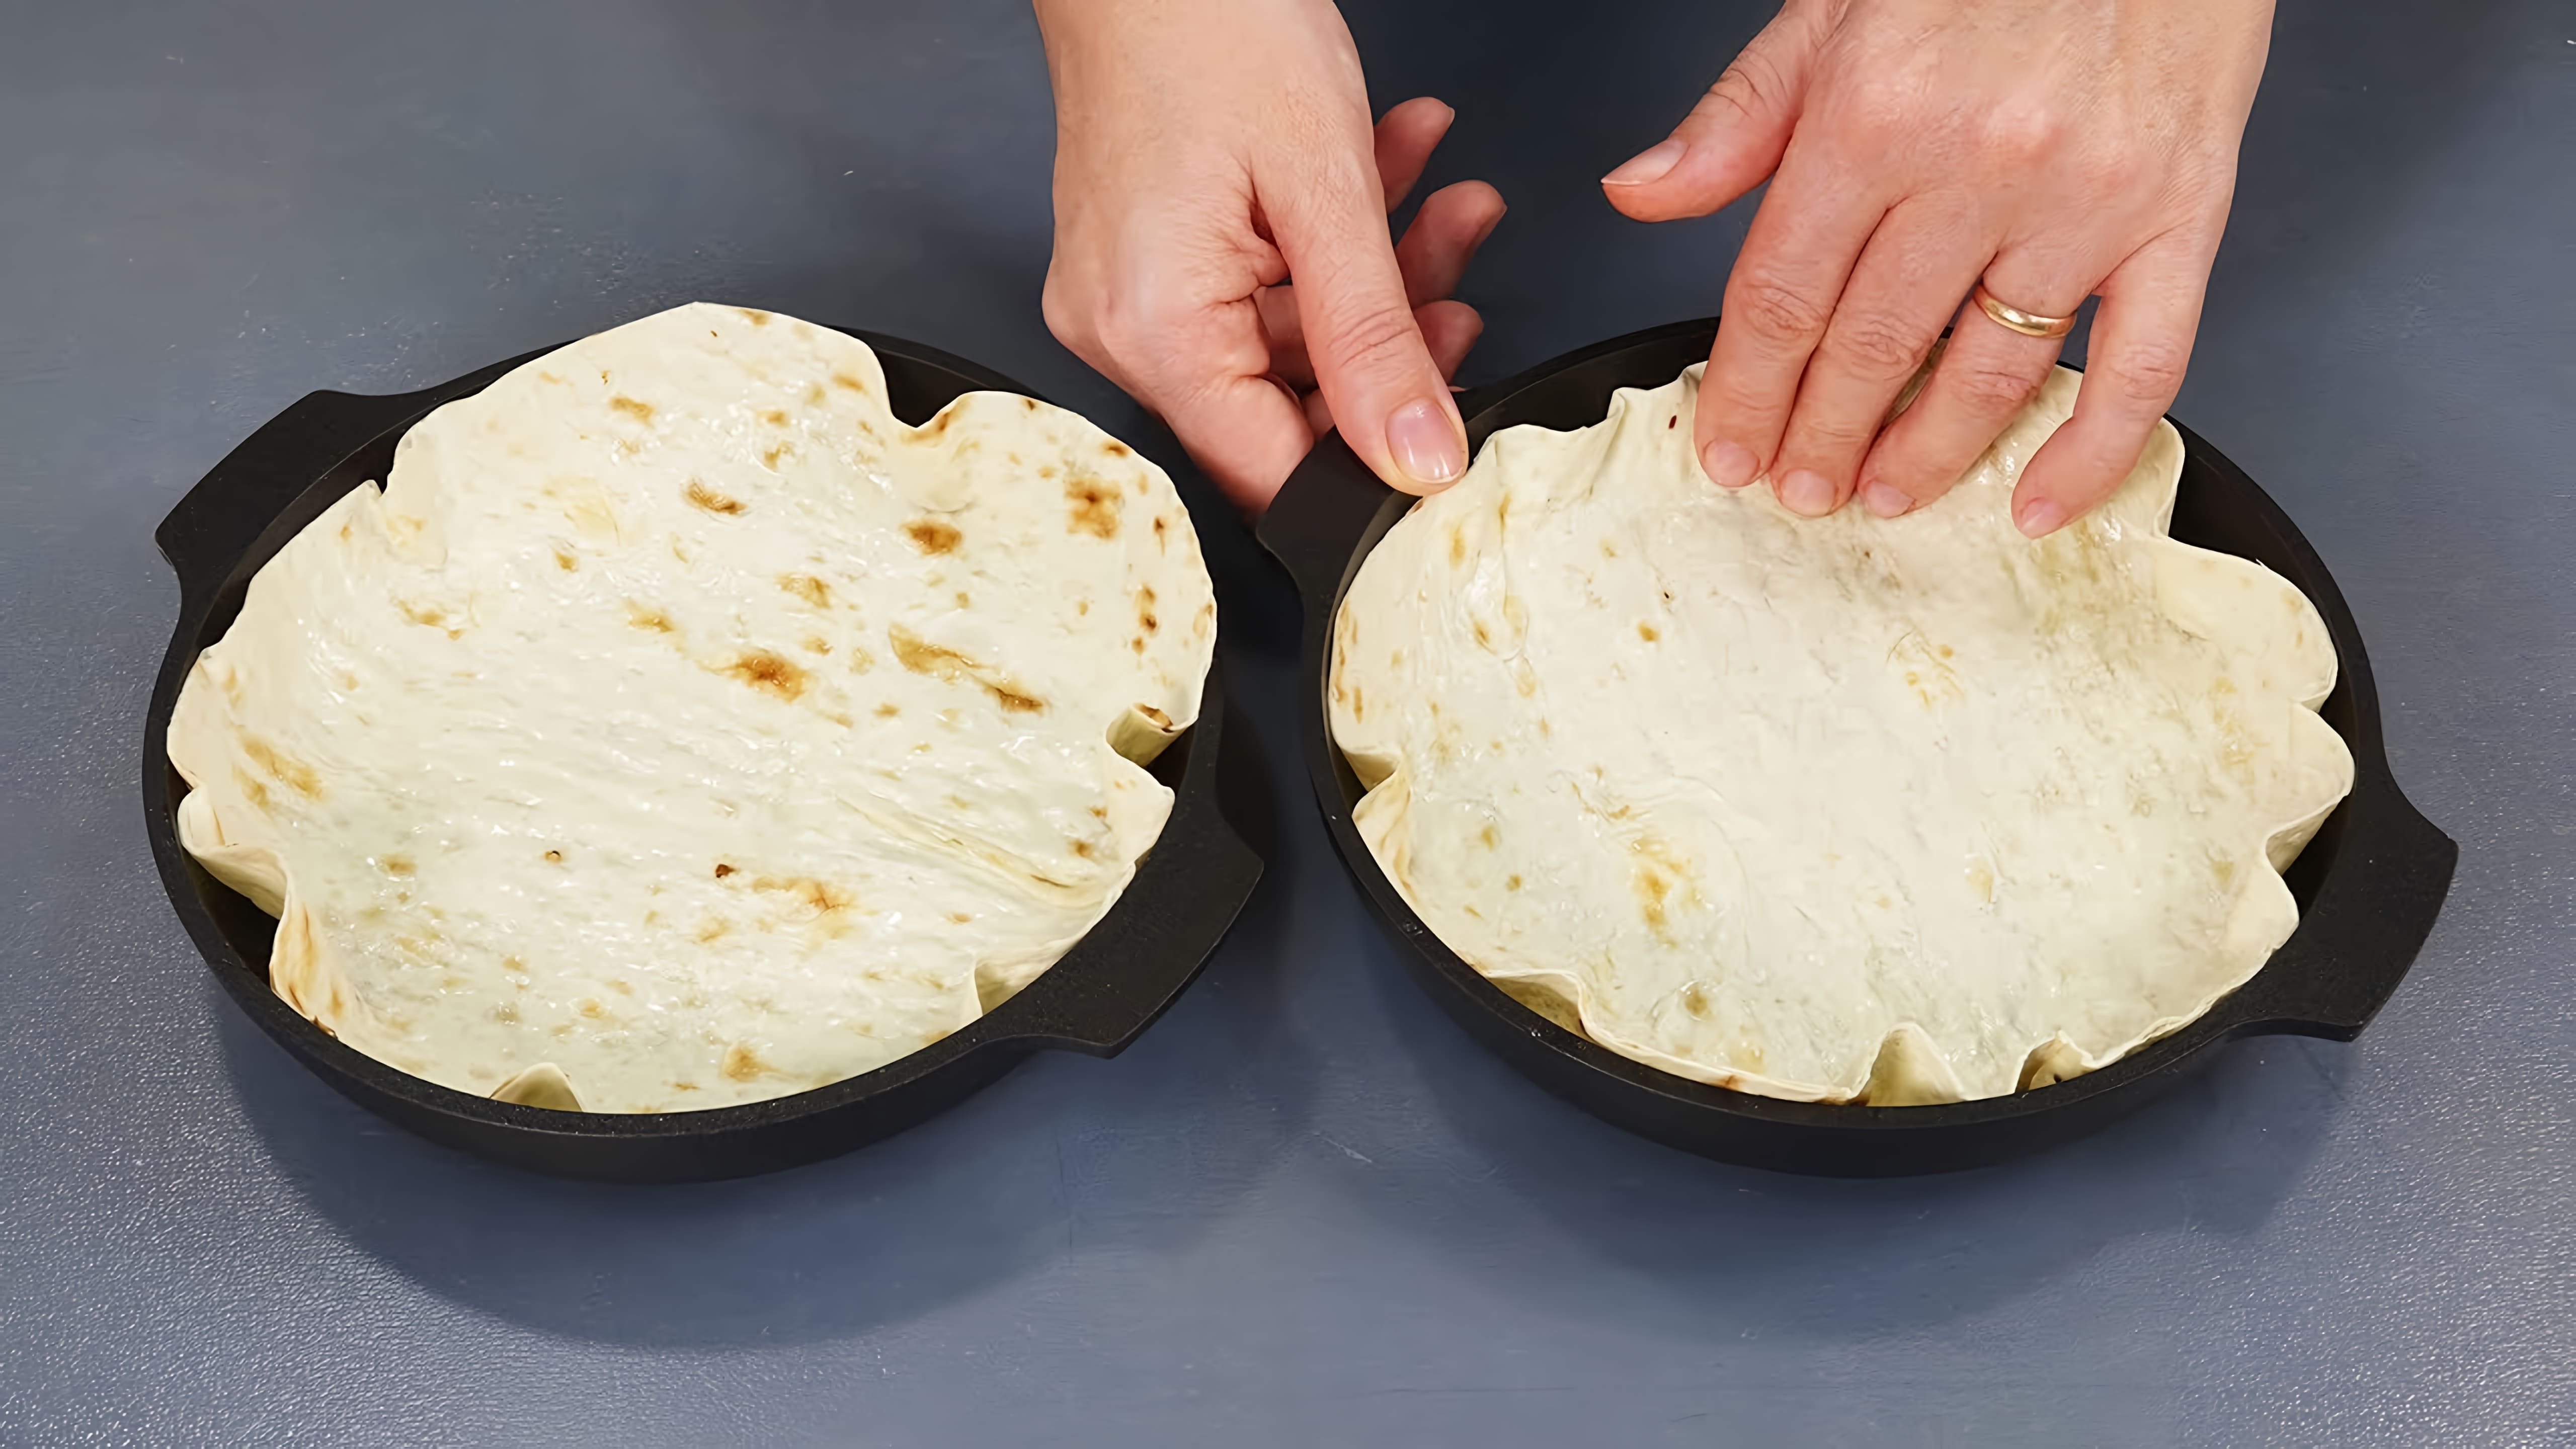 Видео представляет 5 рецептов, которые можно приготовить, используя лаваш, вид плоского хлеба, обычно используемый в восточноевропейской и центральноазиатской кухнях